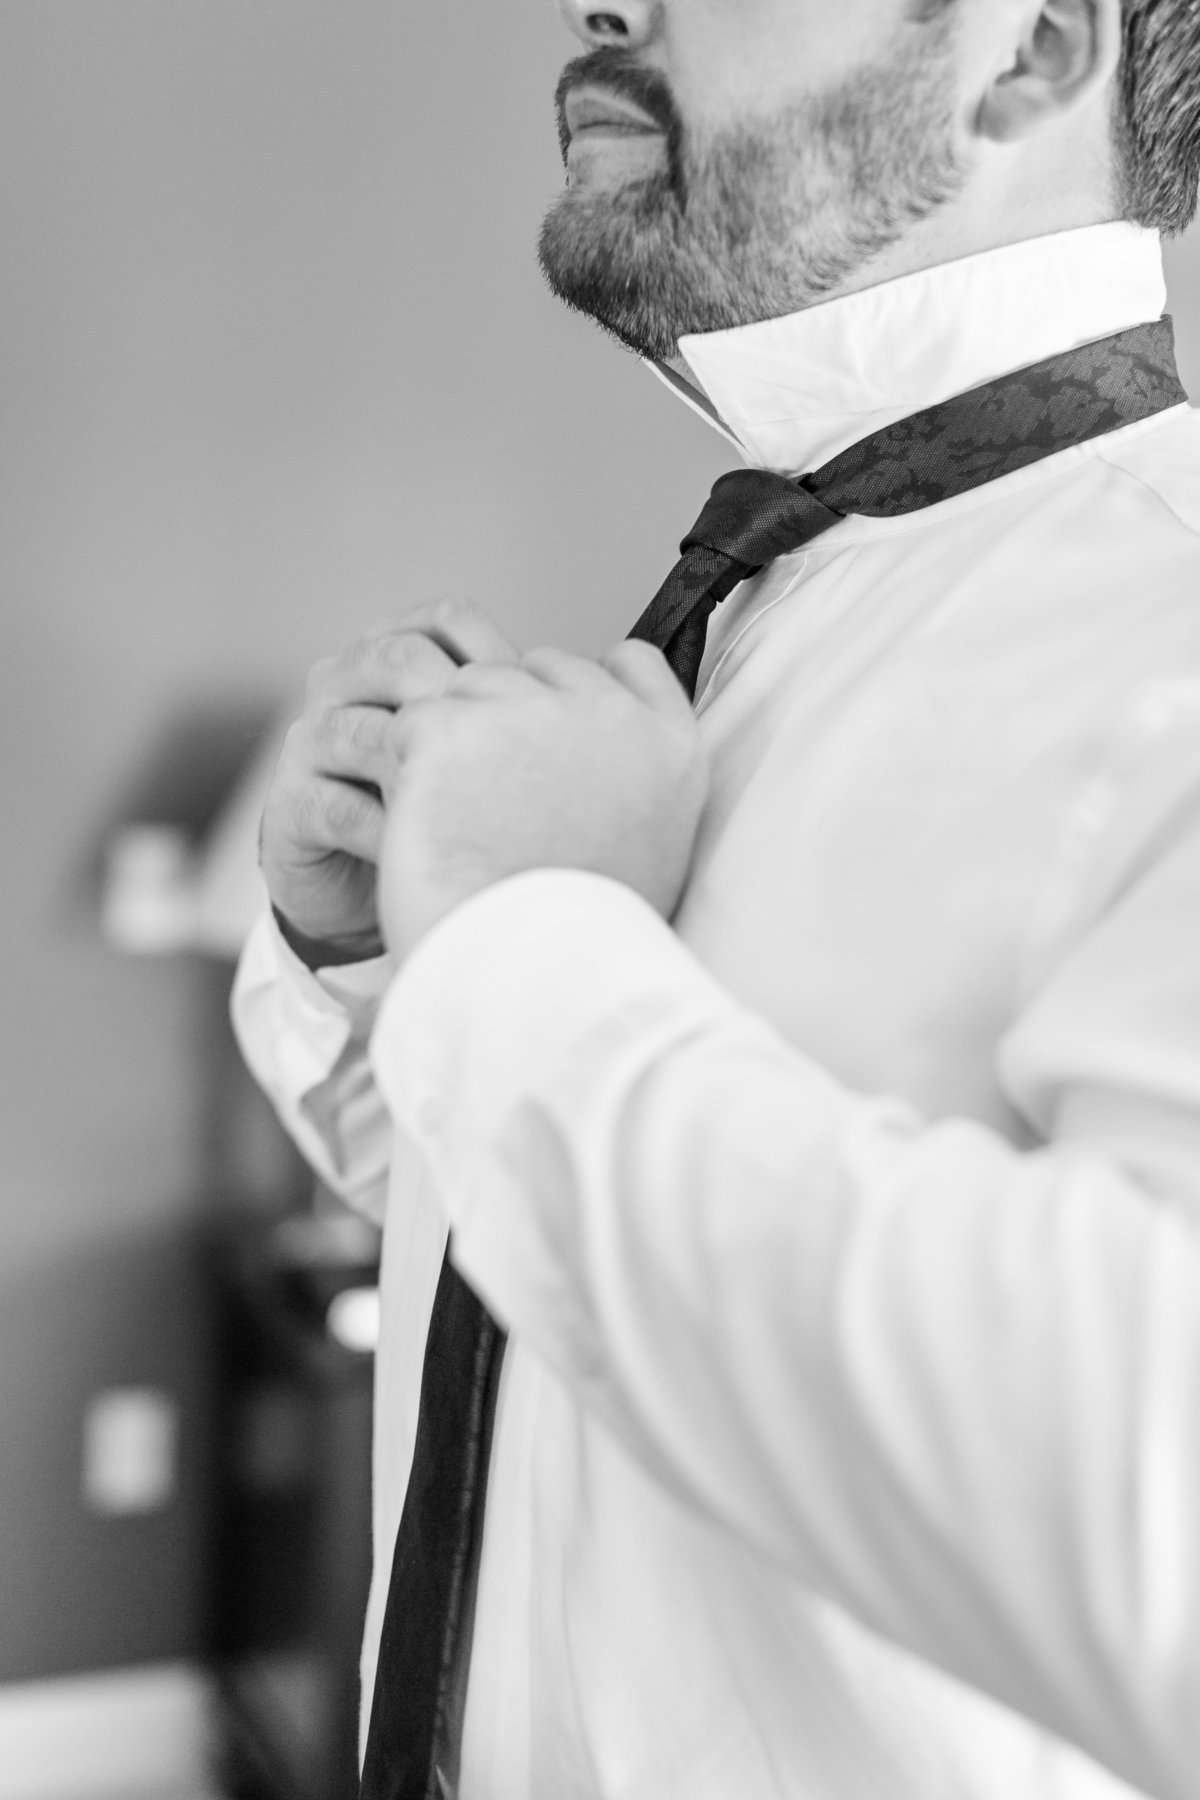 groom tying tie before wedding